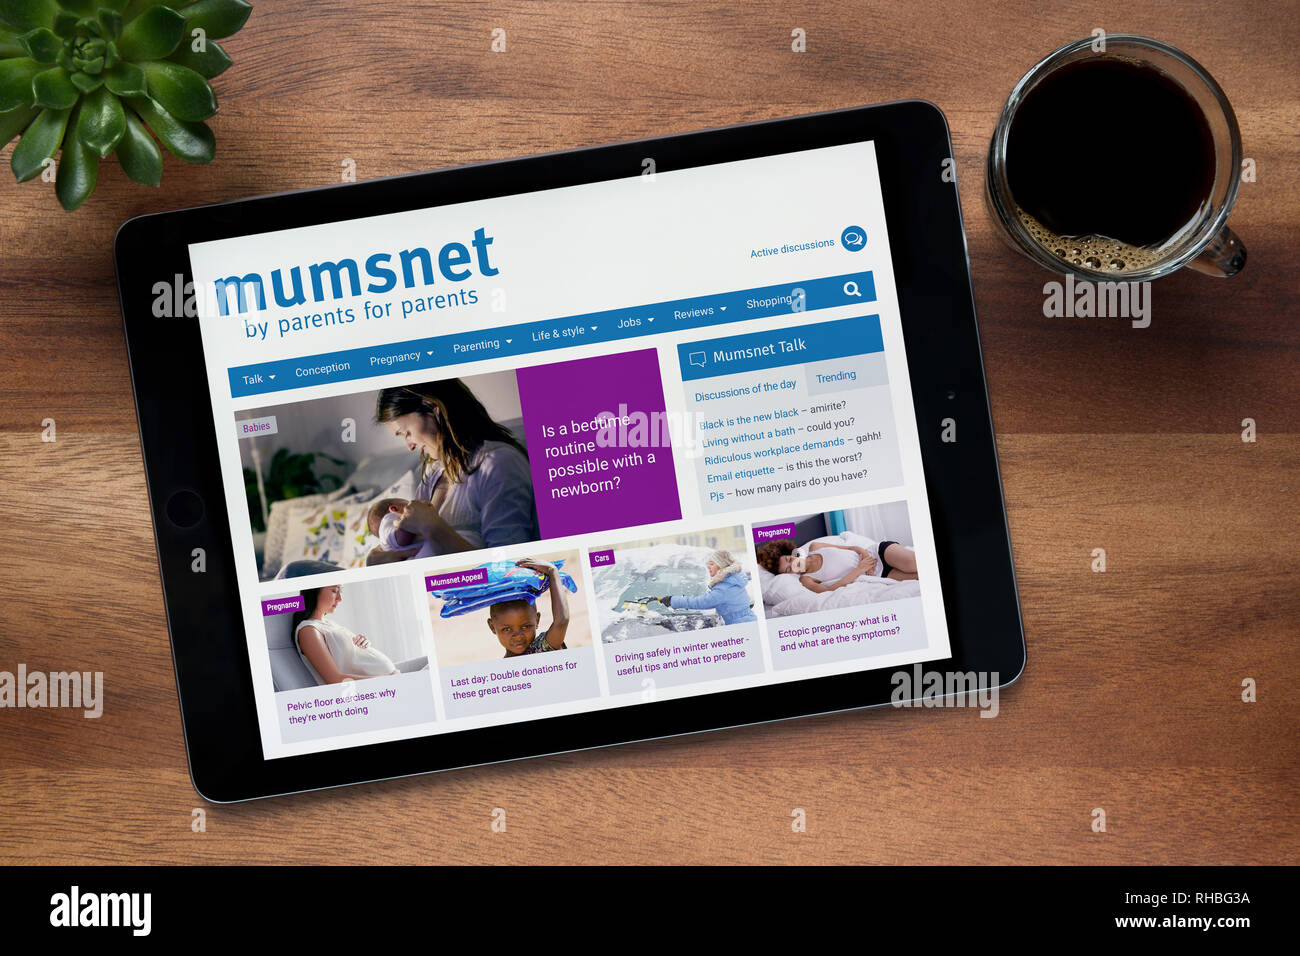 Le site internet de Mumsnet est vu sur un iPad tablet, sur une table en bois avec une machine à expresso et d'une plante (usage éditorial uniquement). Banque D'Images